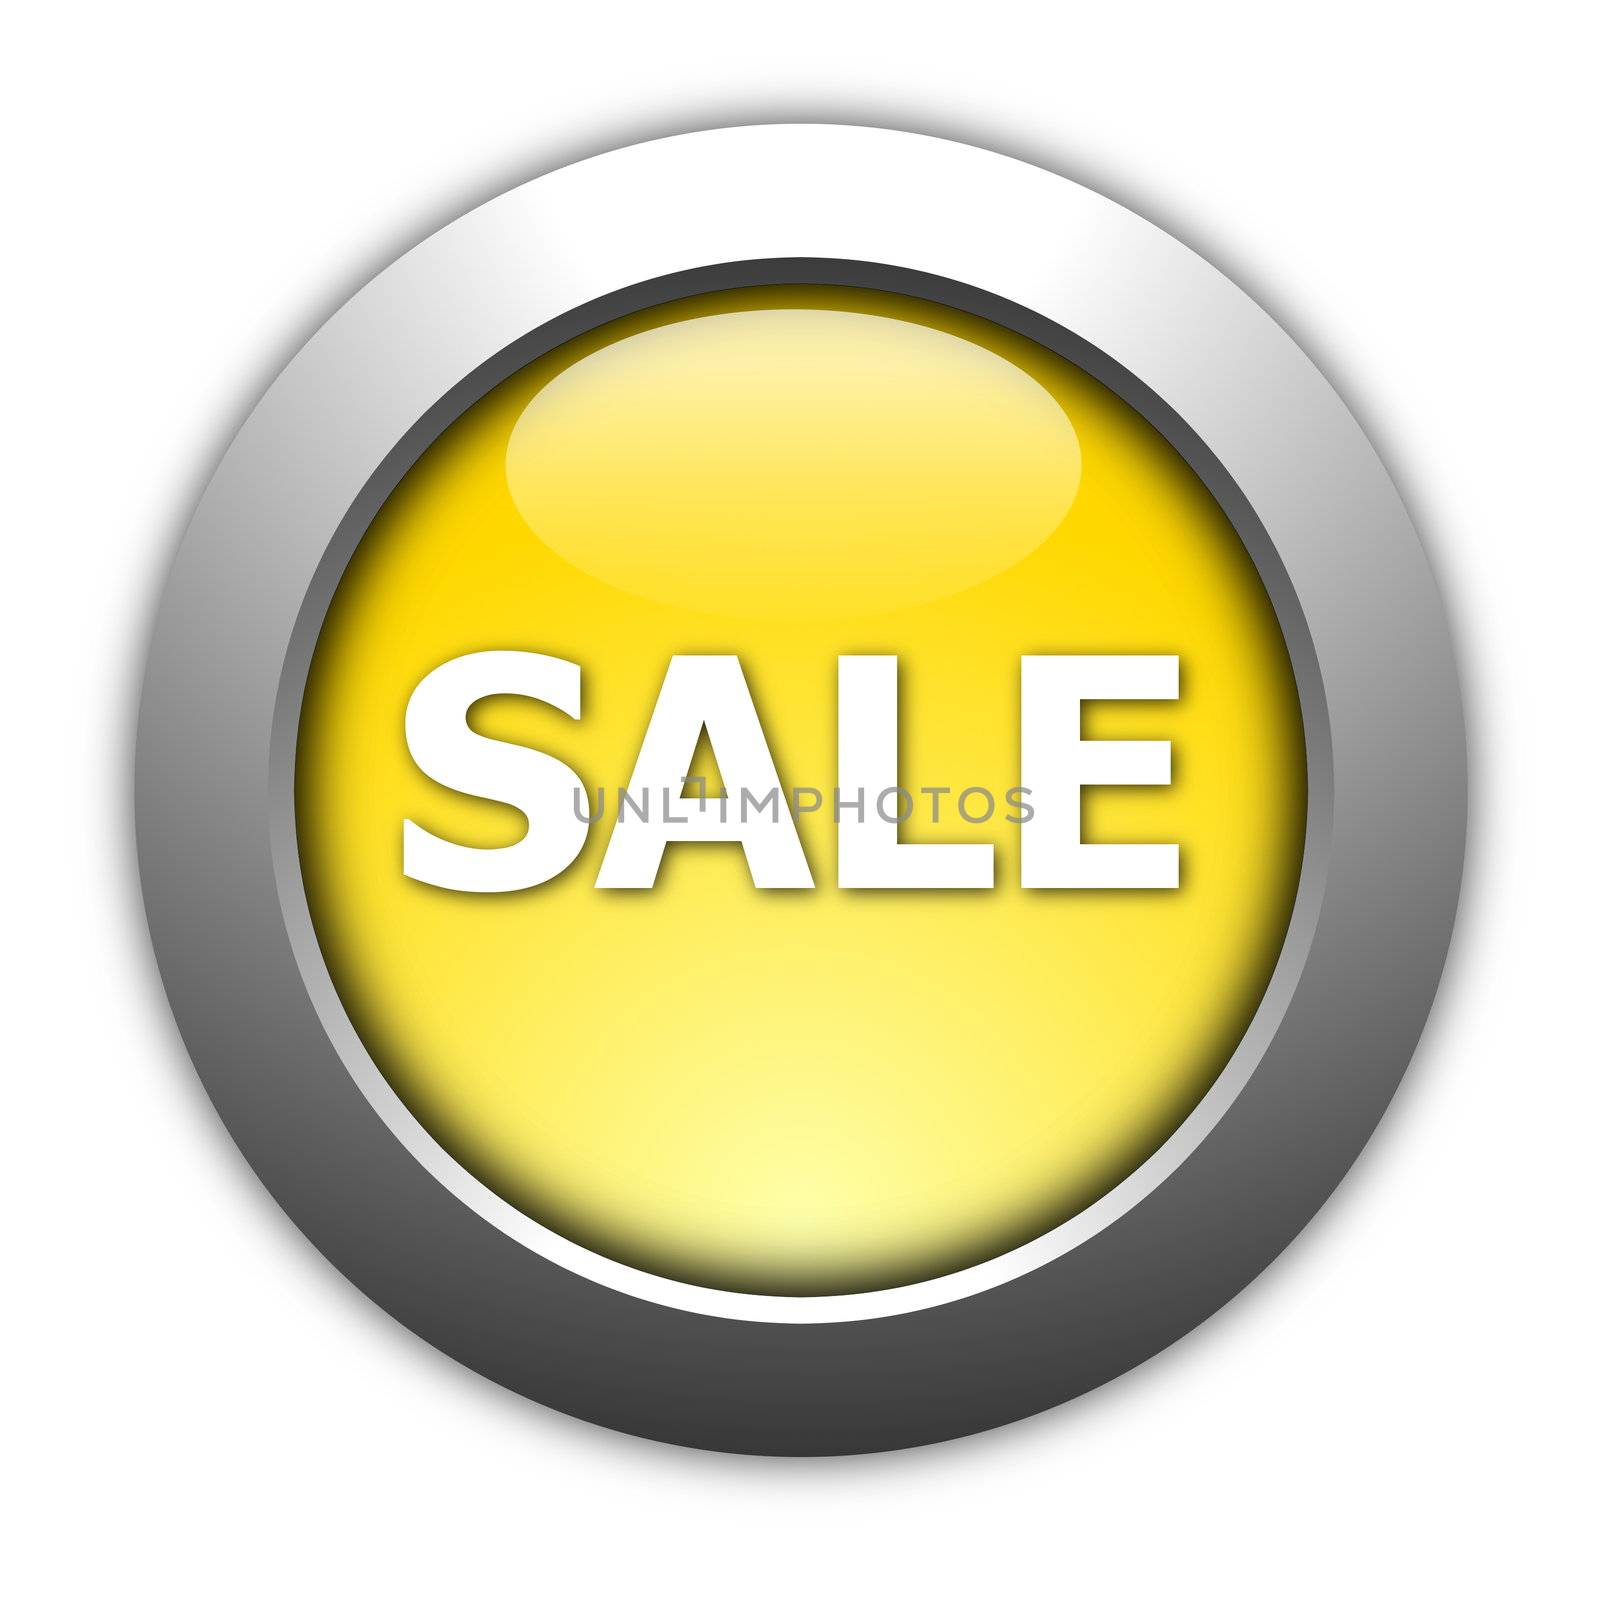 sale button illustration for internet shop or marketing